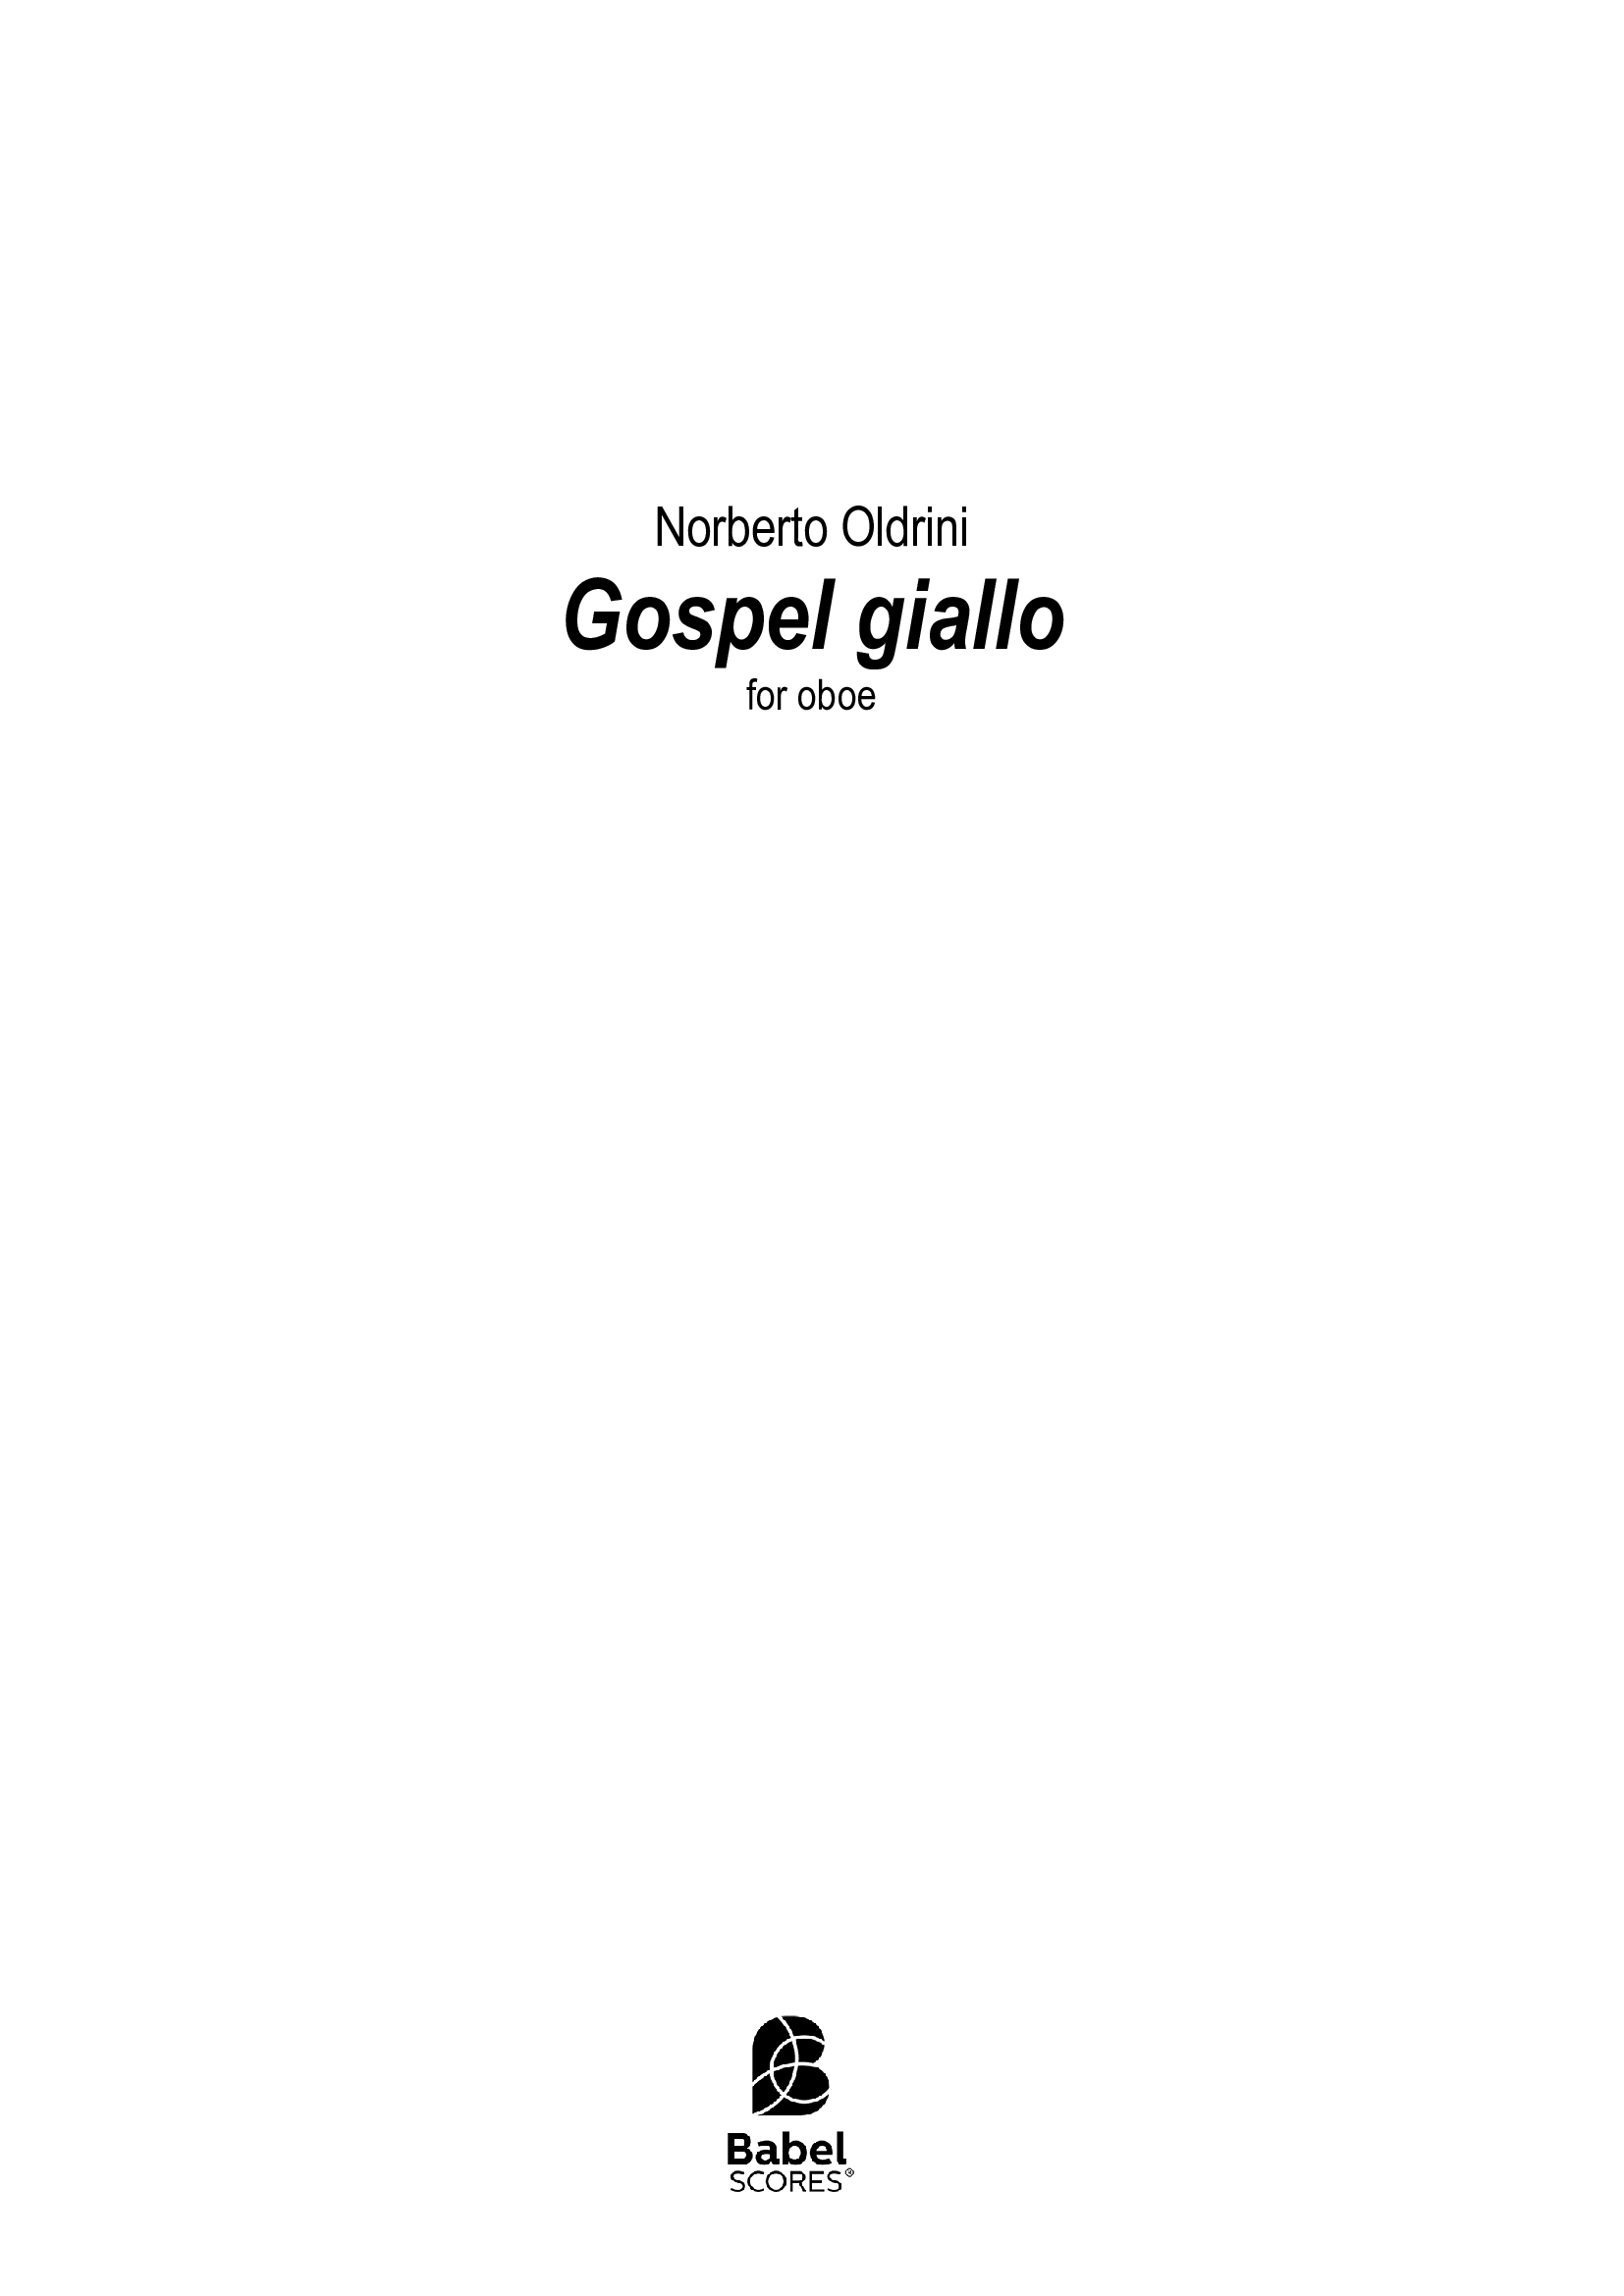 Gospel giallo A4 z